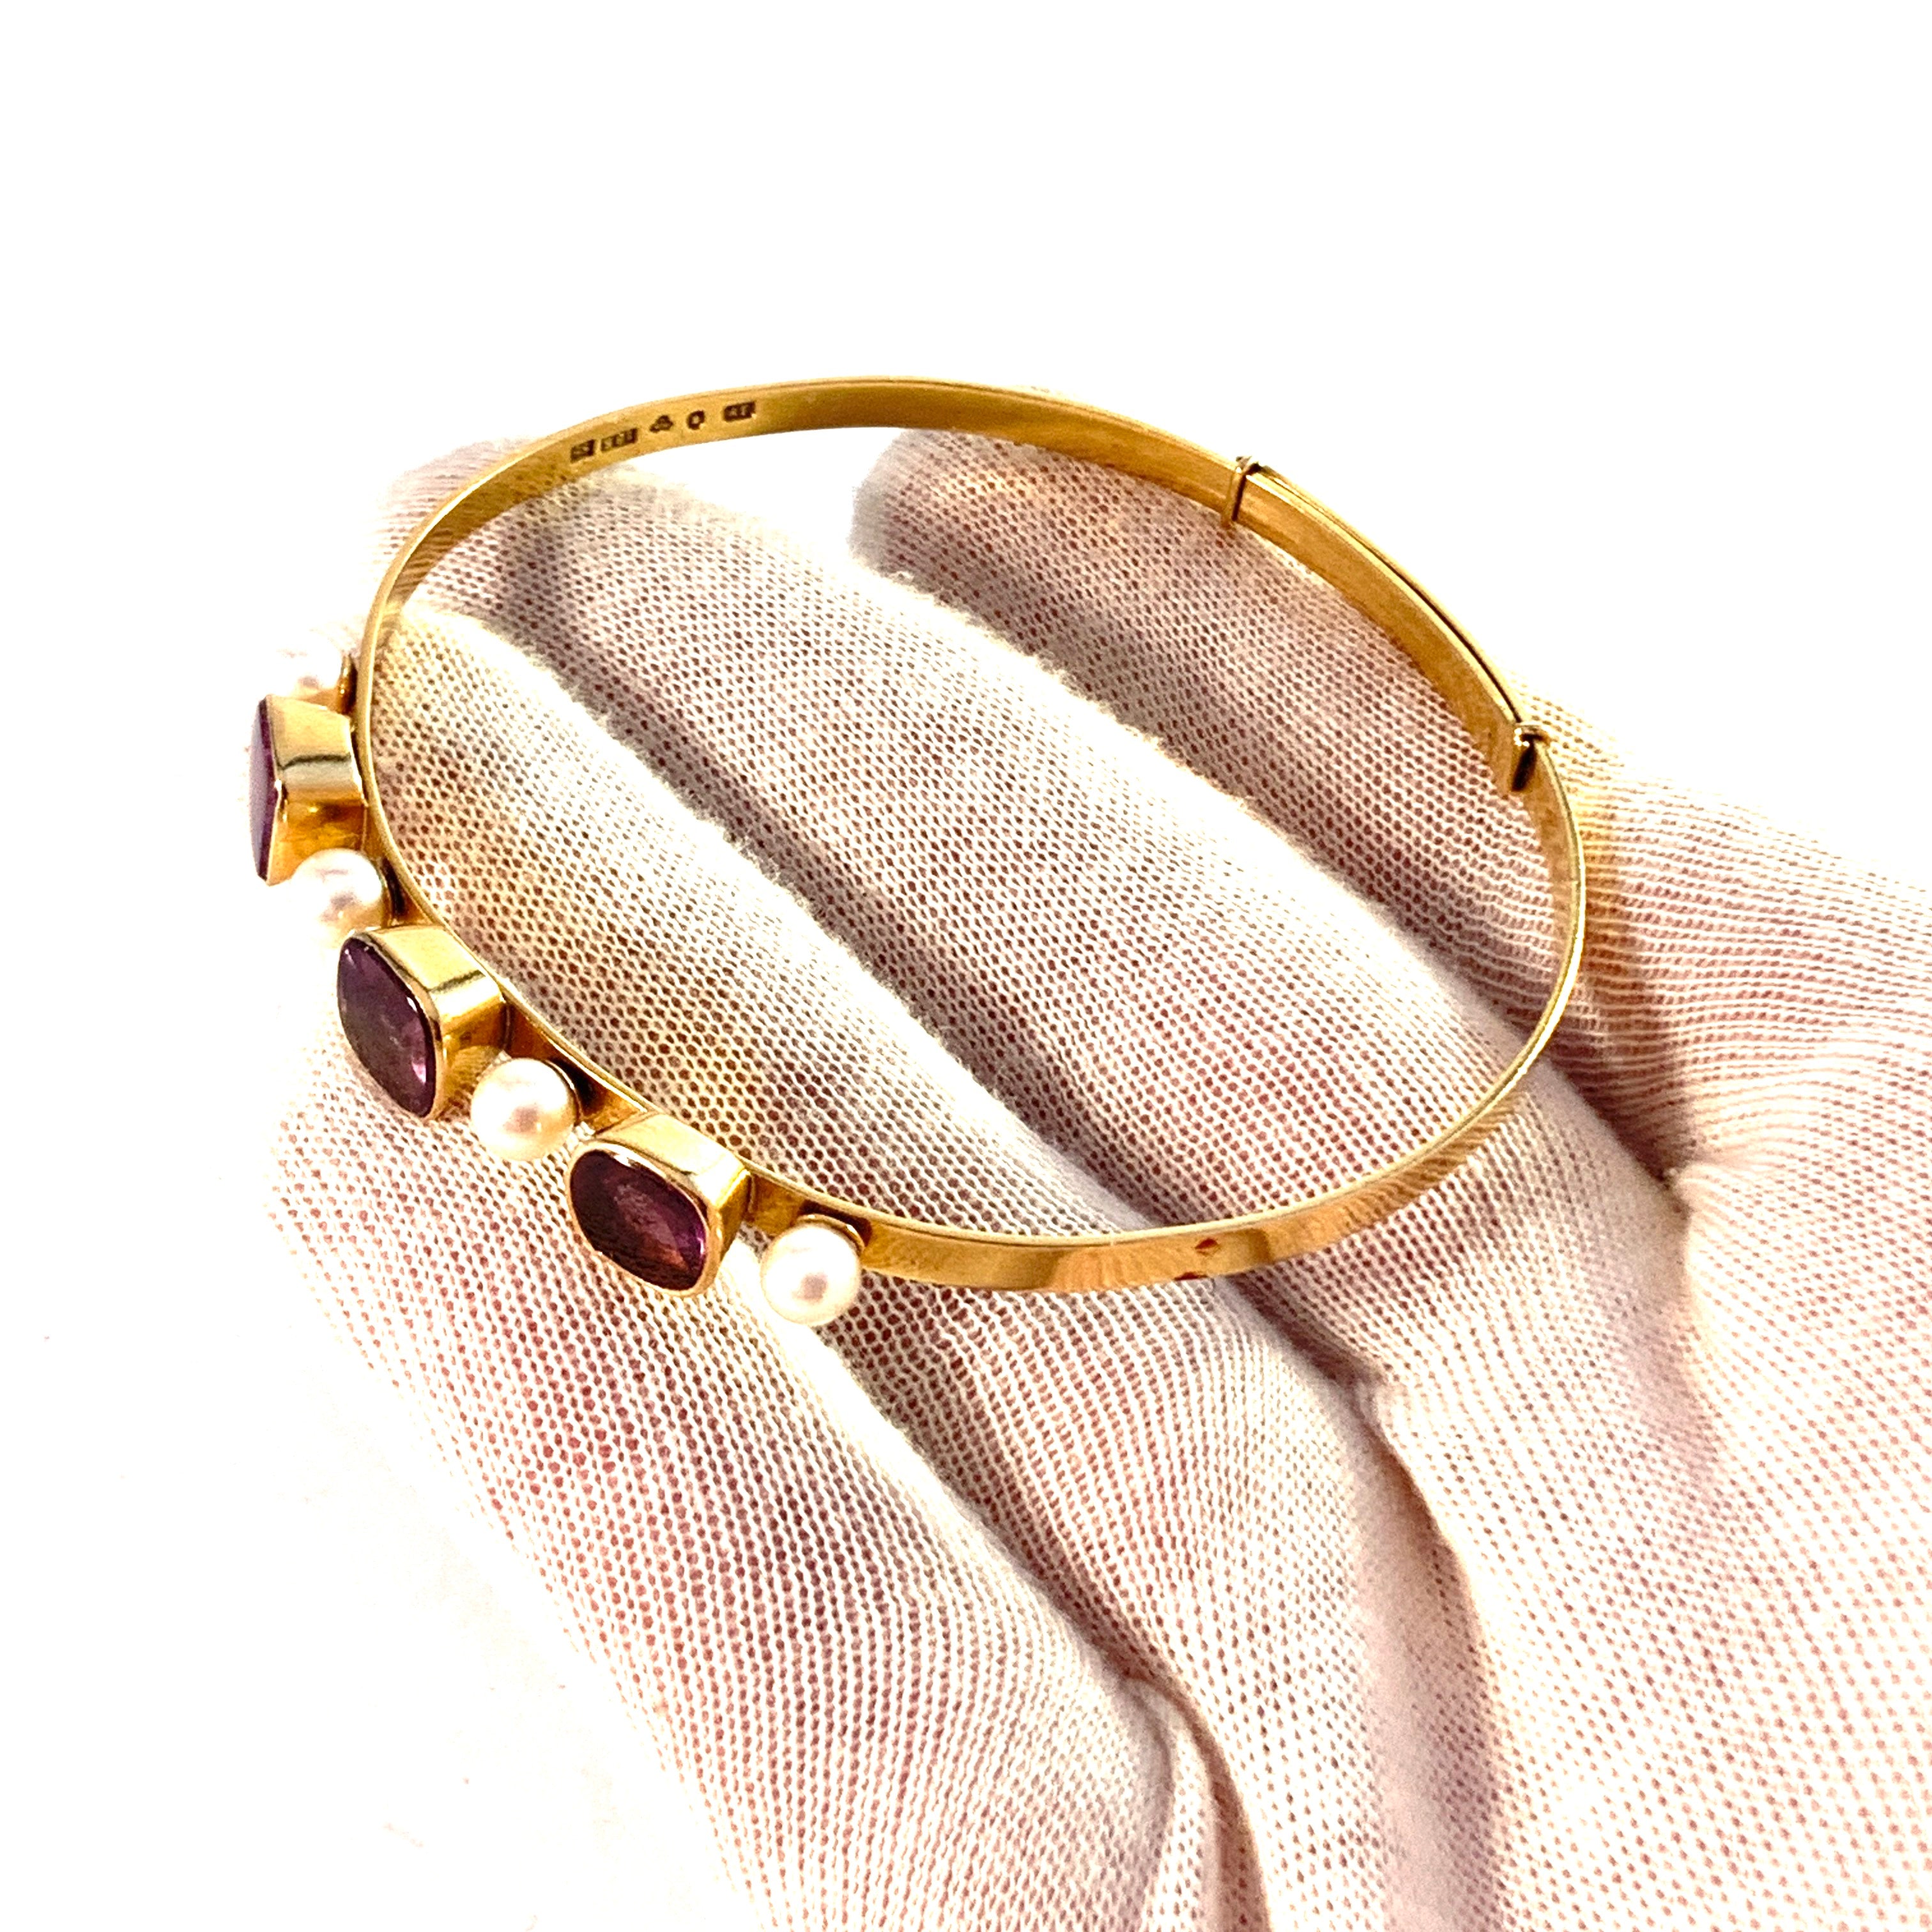 J Petersson, Stockholm 1968. Vintage 18k Gold Amethyst Cultured Pearl Bracelet.